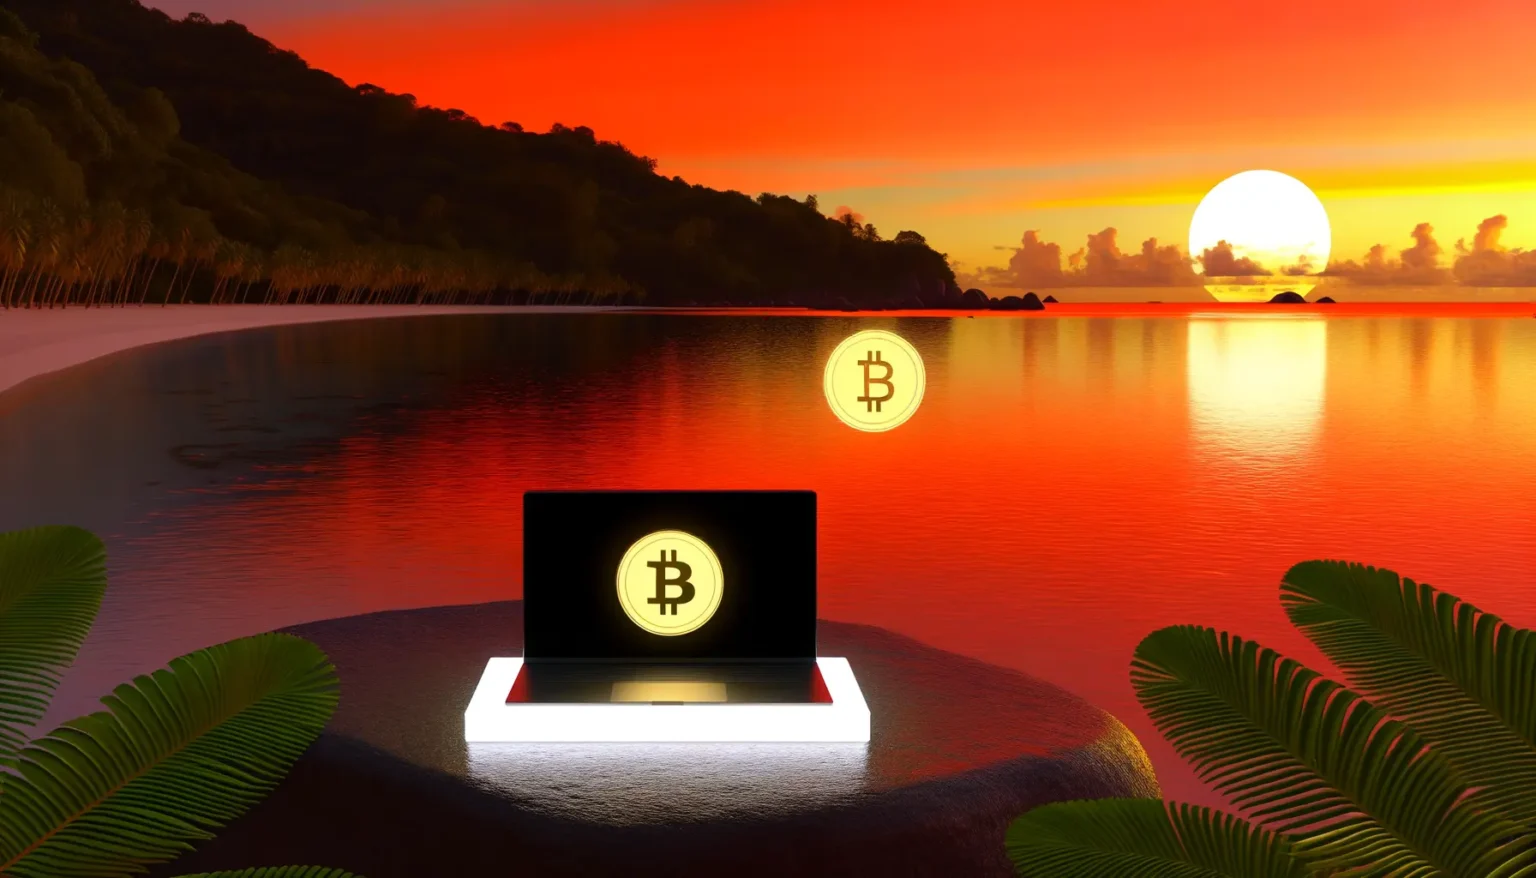 Ein Laptop mit einem leuchtenden Bitcoin-Symbol auf dem Bildschirm steht auf einem Stein am Ufer eines ruhigen Sees unter einem lebhaften orangeroten Himmel bei Sonnenuntergang, der sich auf dem Wasser spiegelt, mit tropischer Vegetation im Vordergrund und Hintergrund.